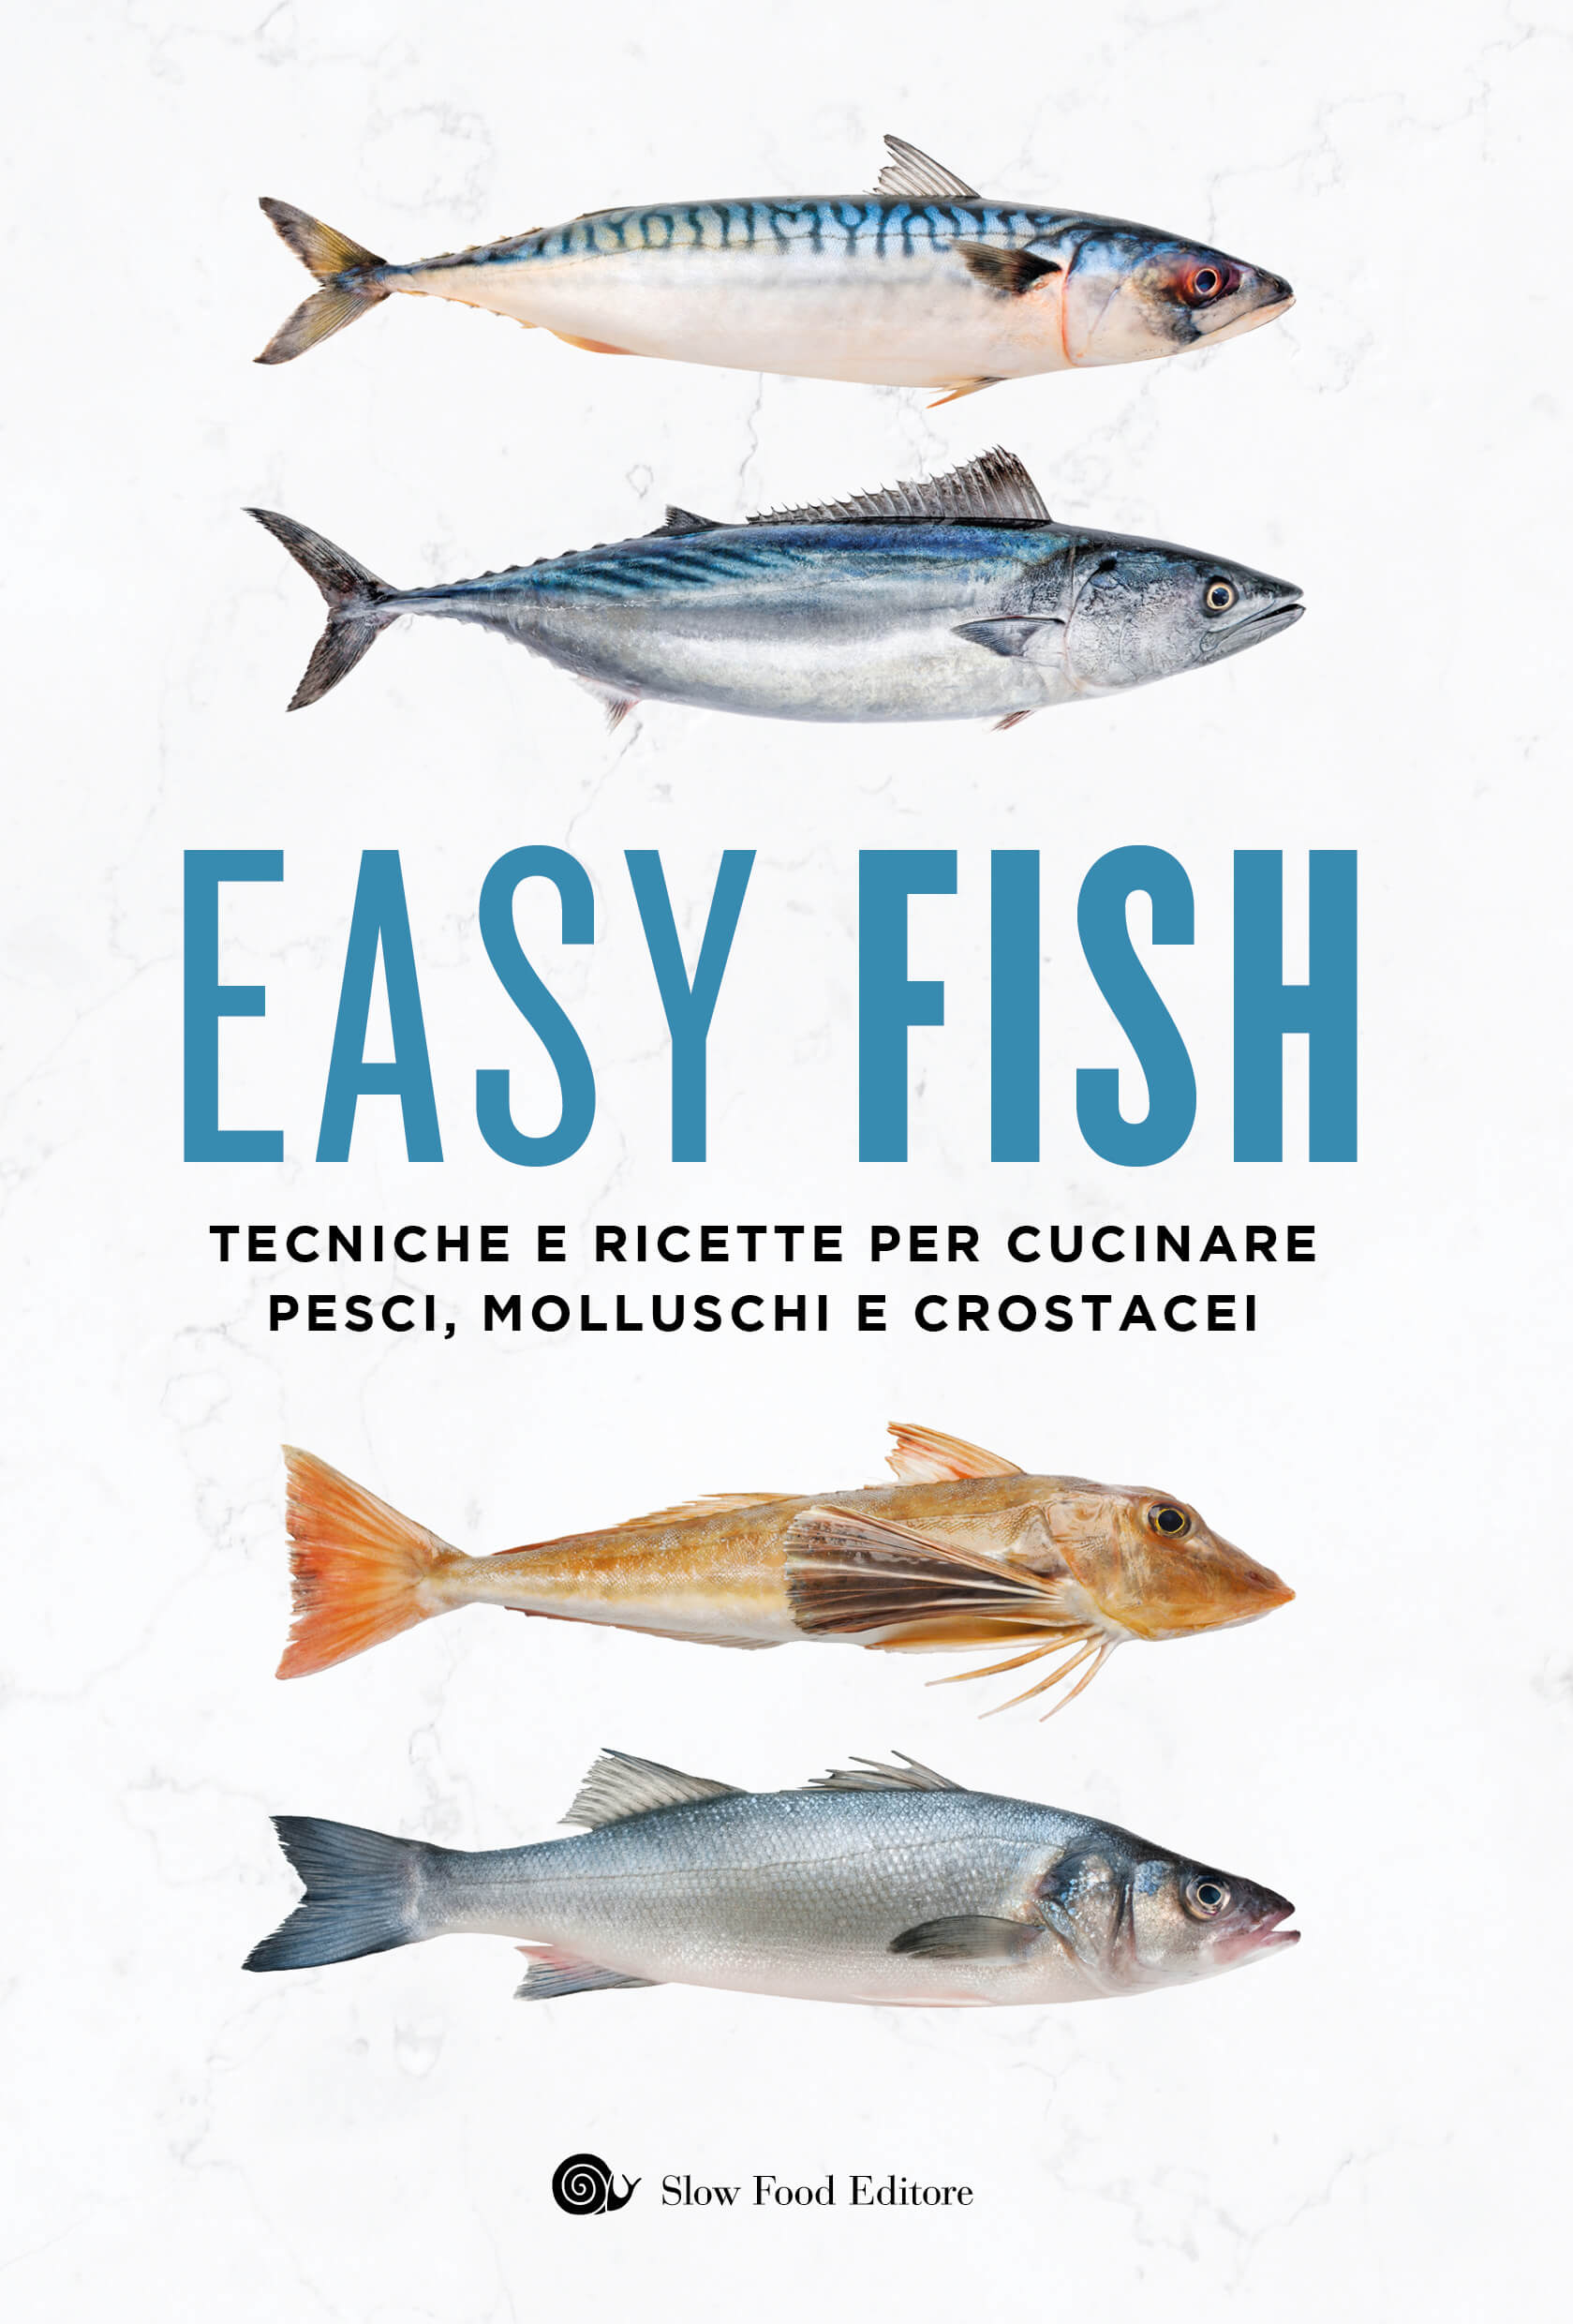 Easy fish - Tecniche e ricette per cucinare pesci, molluschi e crostacei